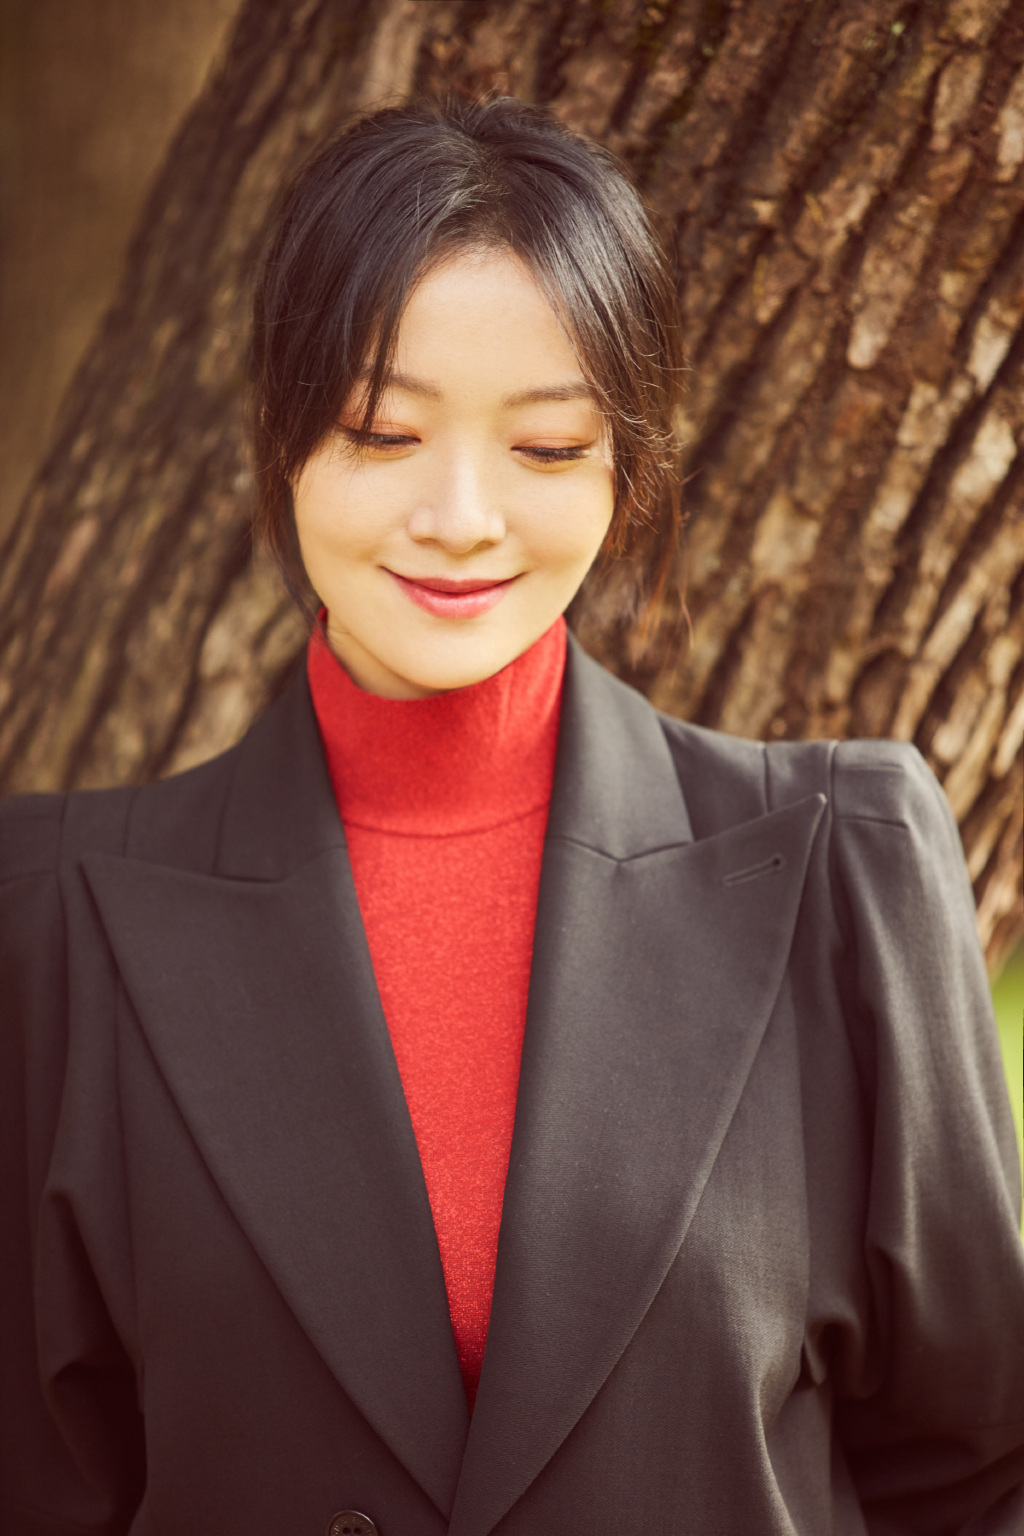 齐溪黑色西服外套搭配红色高领连衣裙户外草坪写真照